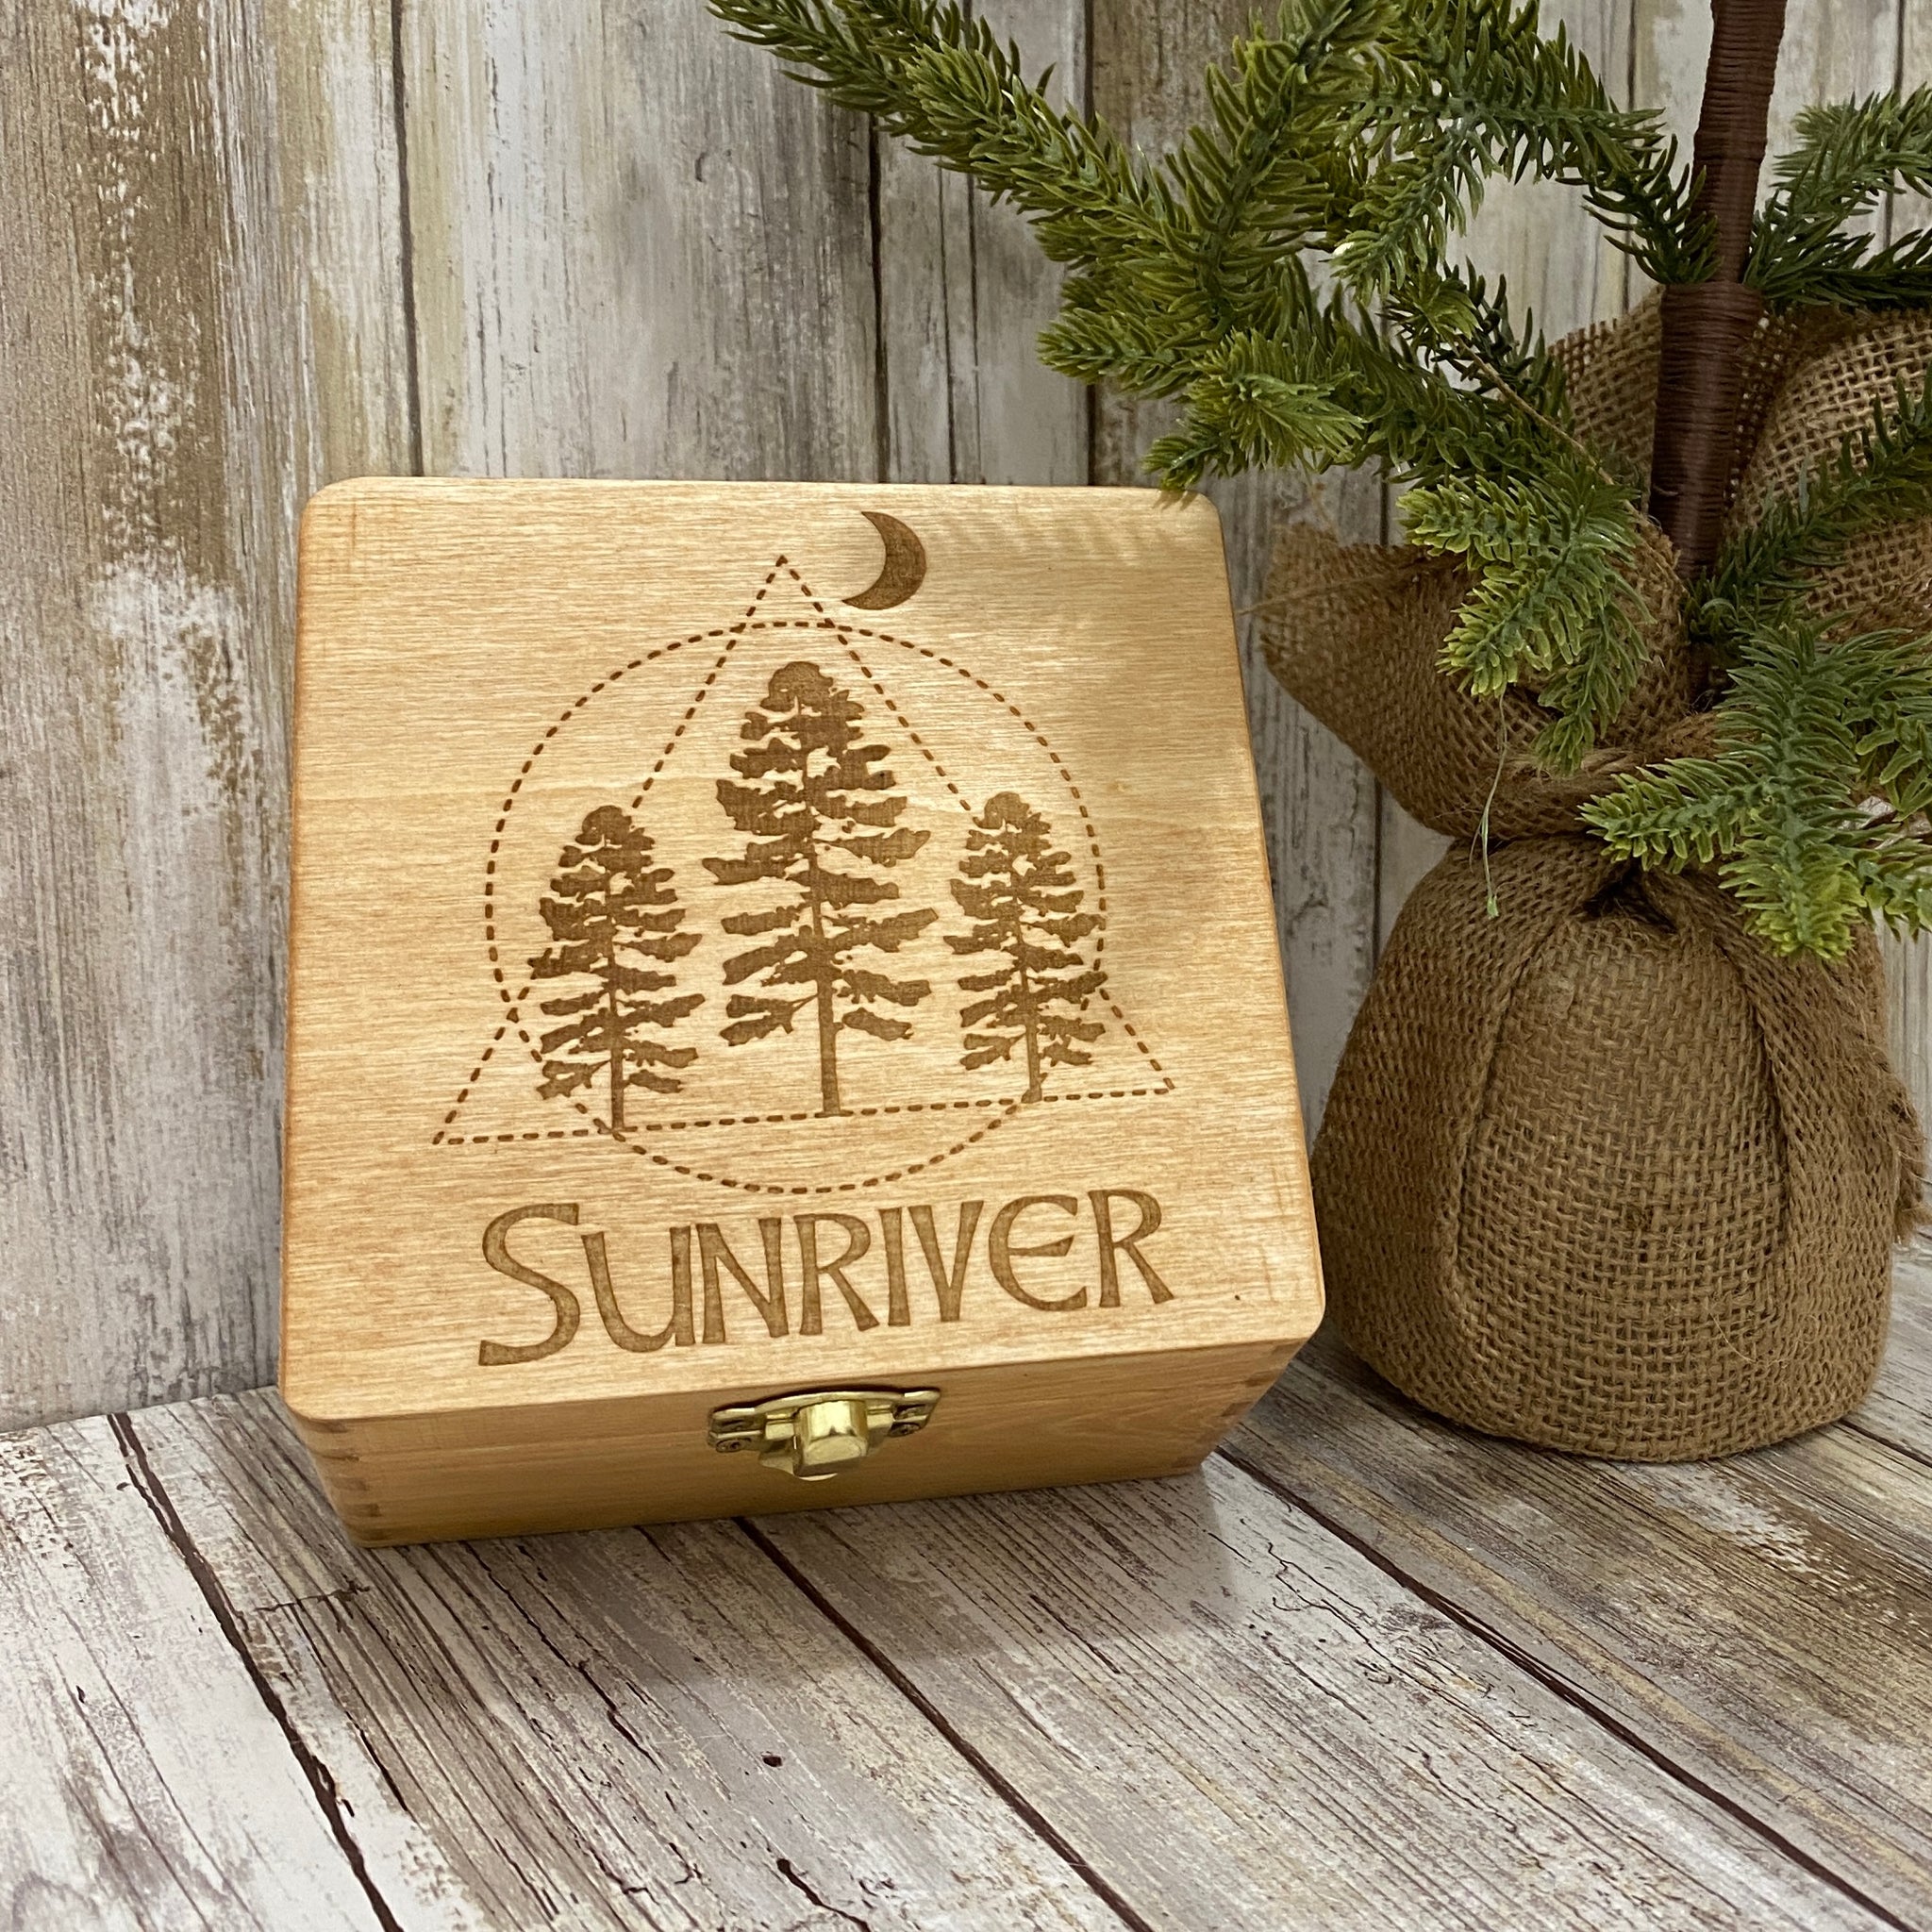 Sunriver Oregon Sacred Forest Box - Laser Engraved Wood